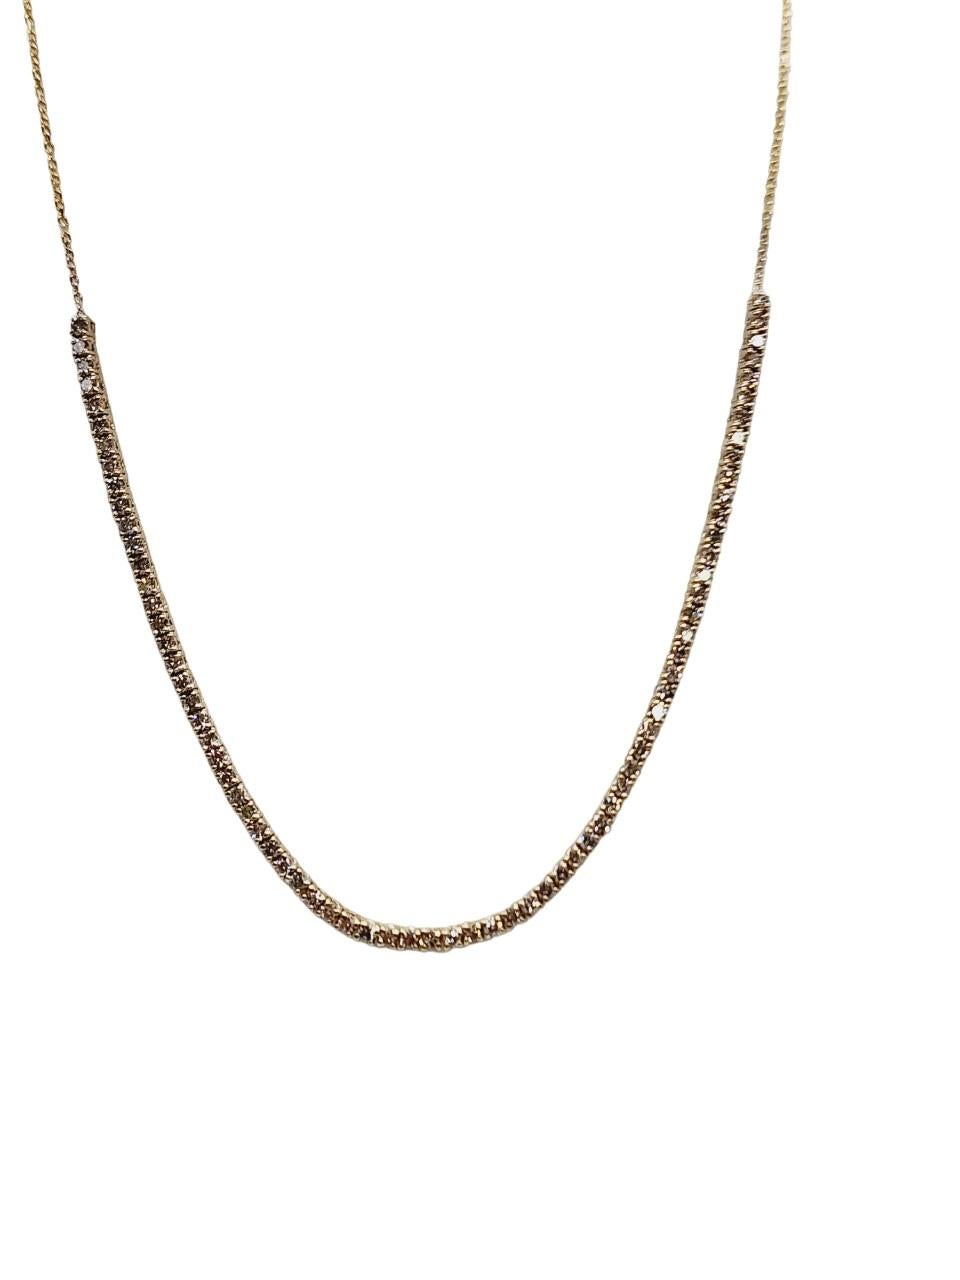 Taille ronde 1.67 Carat Mini Diamond Necklace Chain 14 Karat Yellow Gold 23'' (Chaîne de collier en or jaune 14 carats) en vente